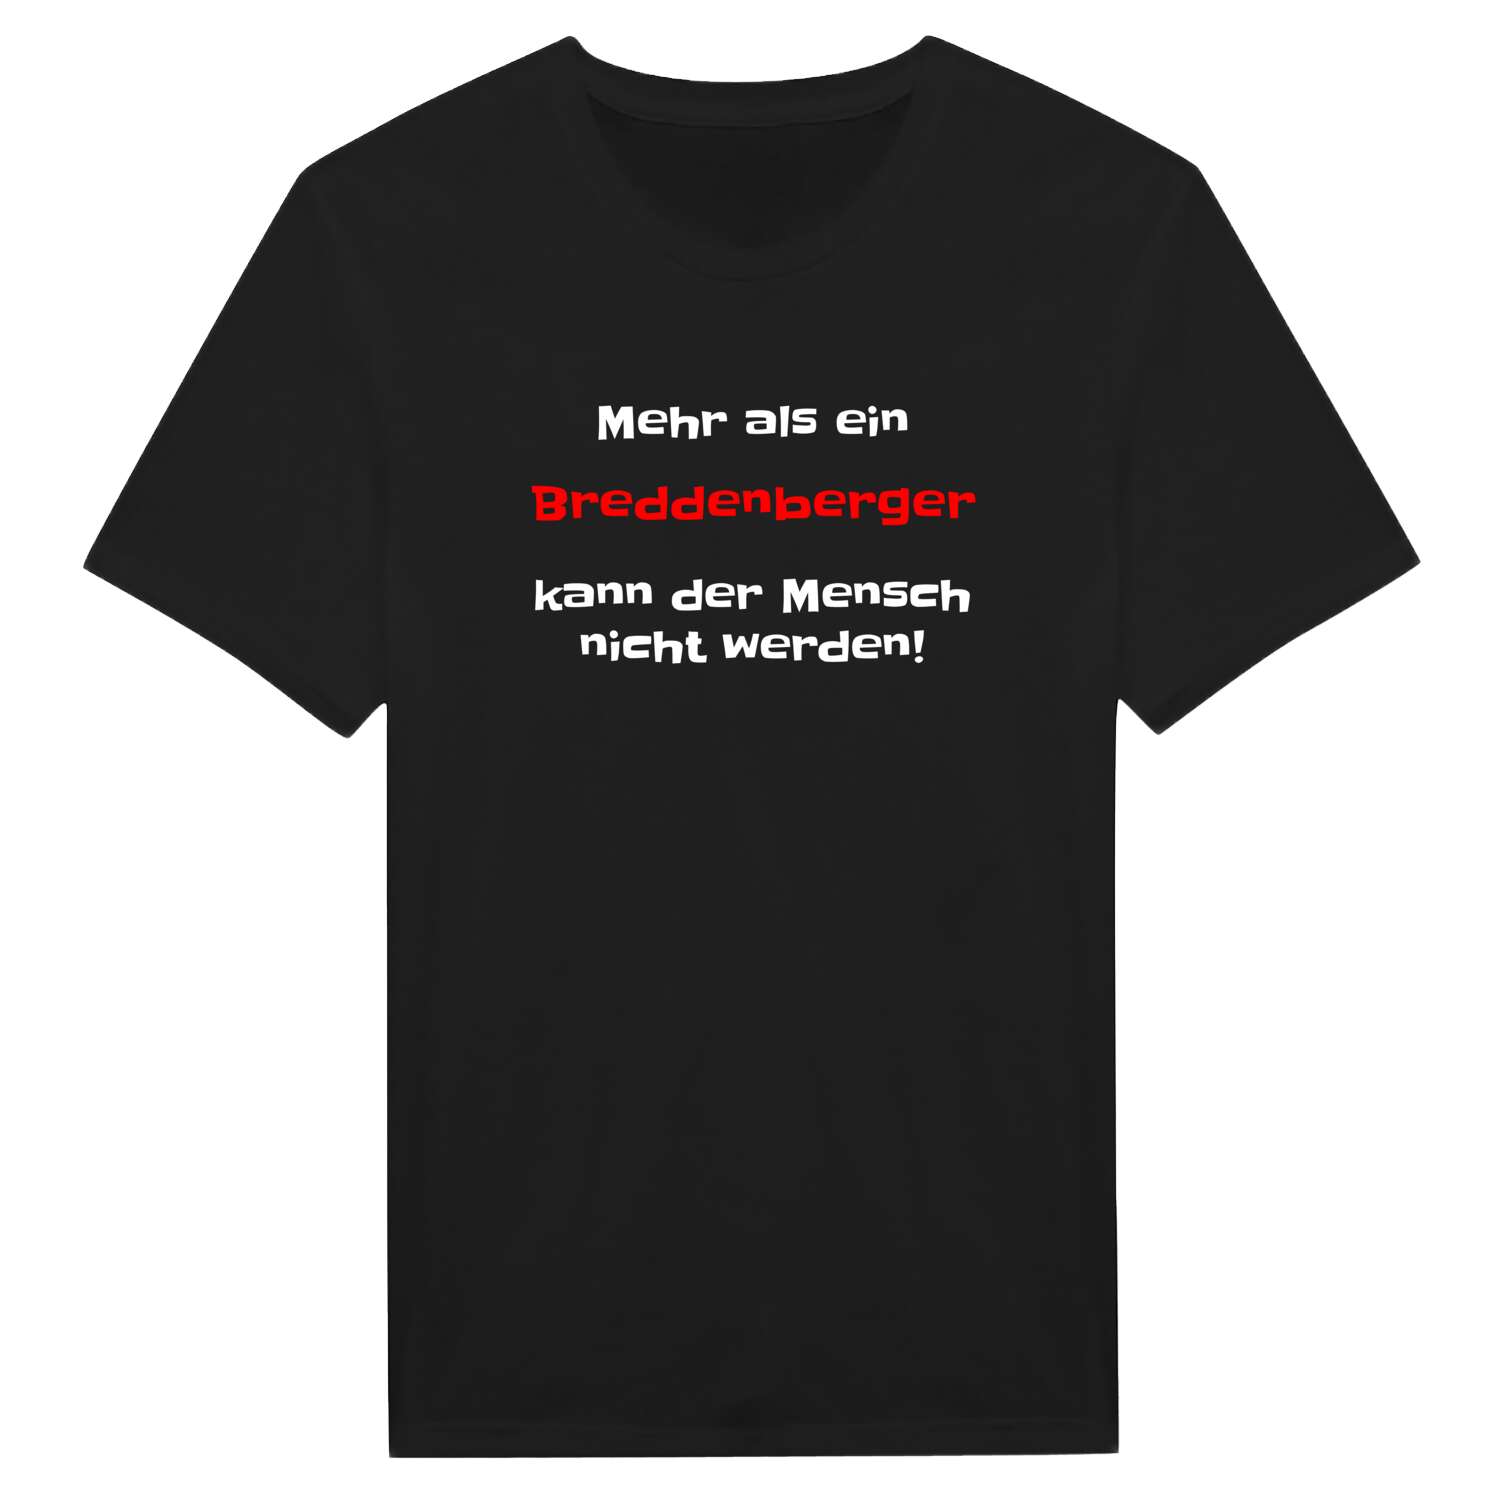 Breddenberg T-Shirt »Mehr als ein«